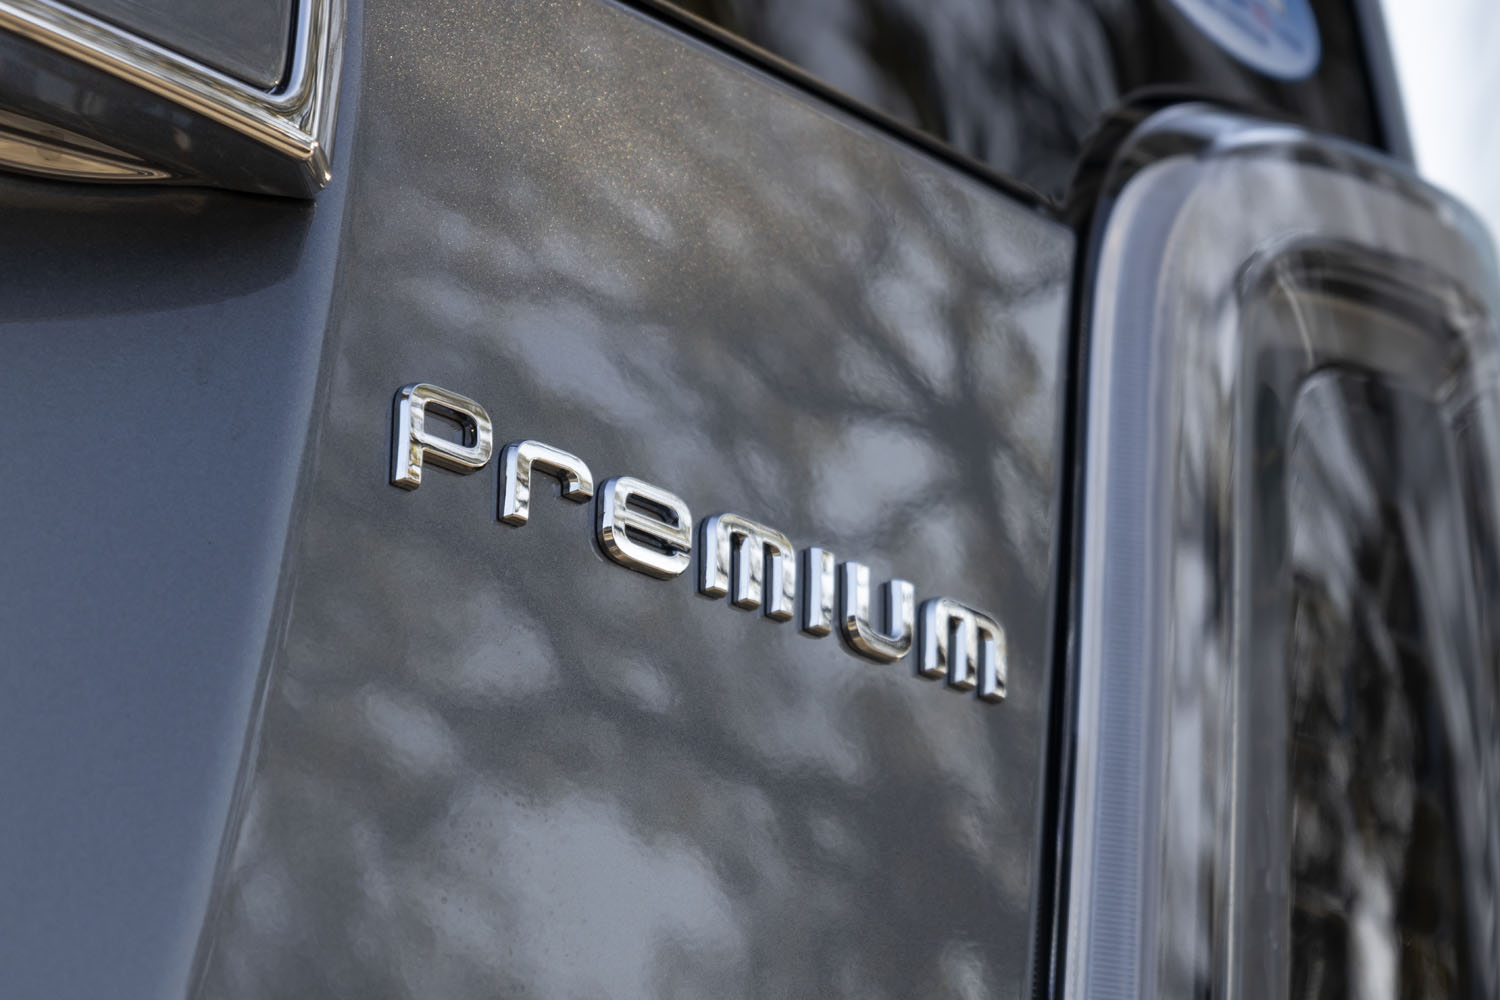 グレード構成は主に「オリジナル」「プレミアム」「RS」の3種類。プレミアムのみエンジンに自然吸気とターボが用意されており、同グレードのターボ車は「プレミアムツアラー」という名称で呼ばれる。